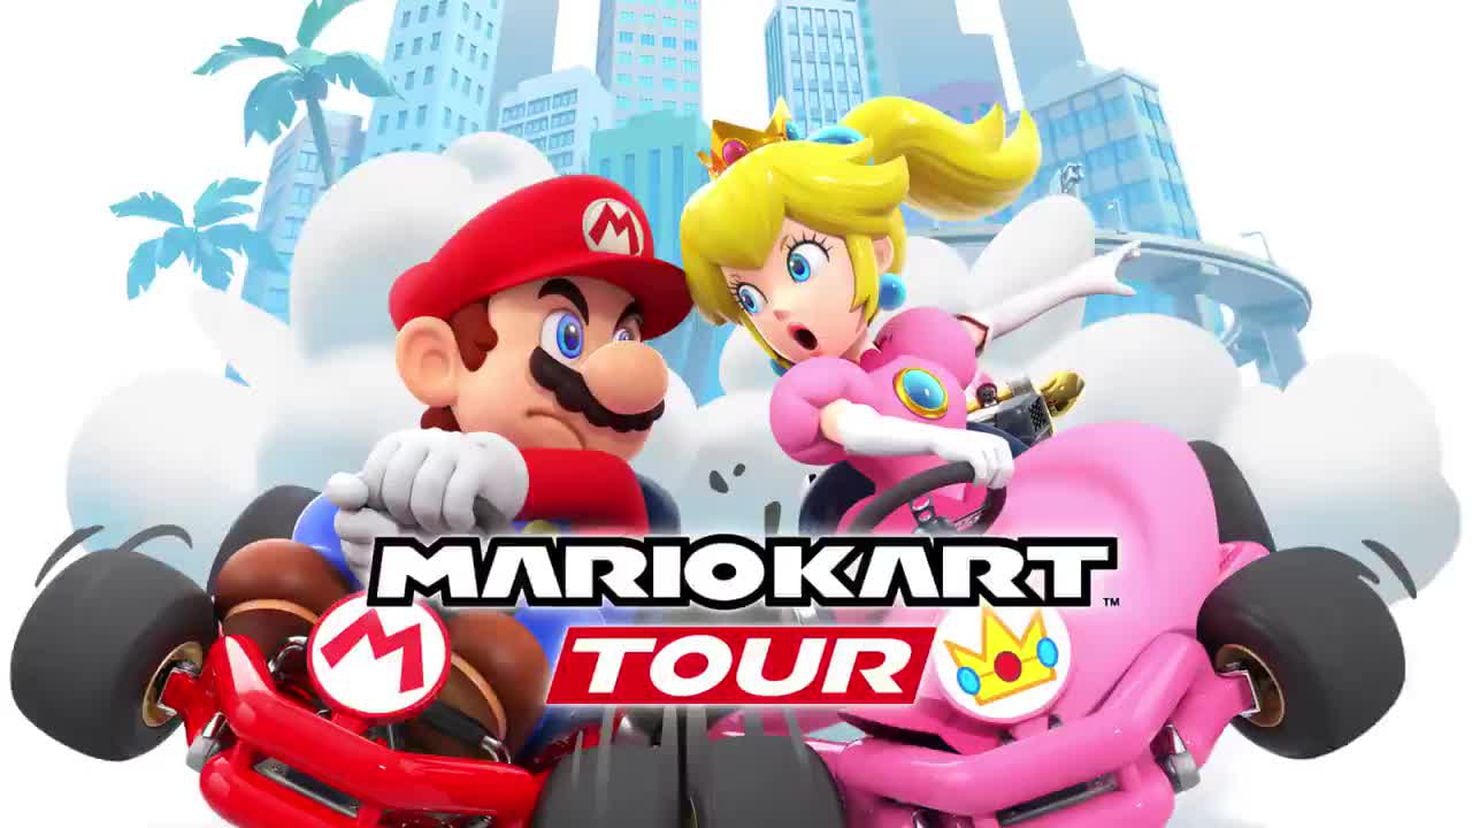 Mario Kart Tour ya se puede descargar en Android y iOS